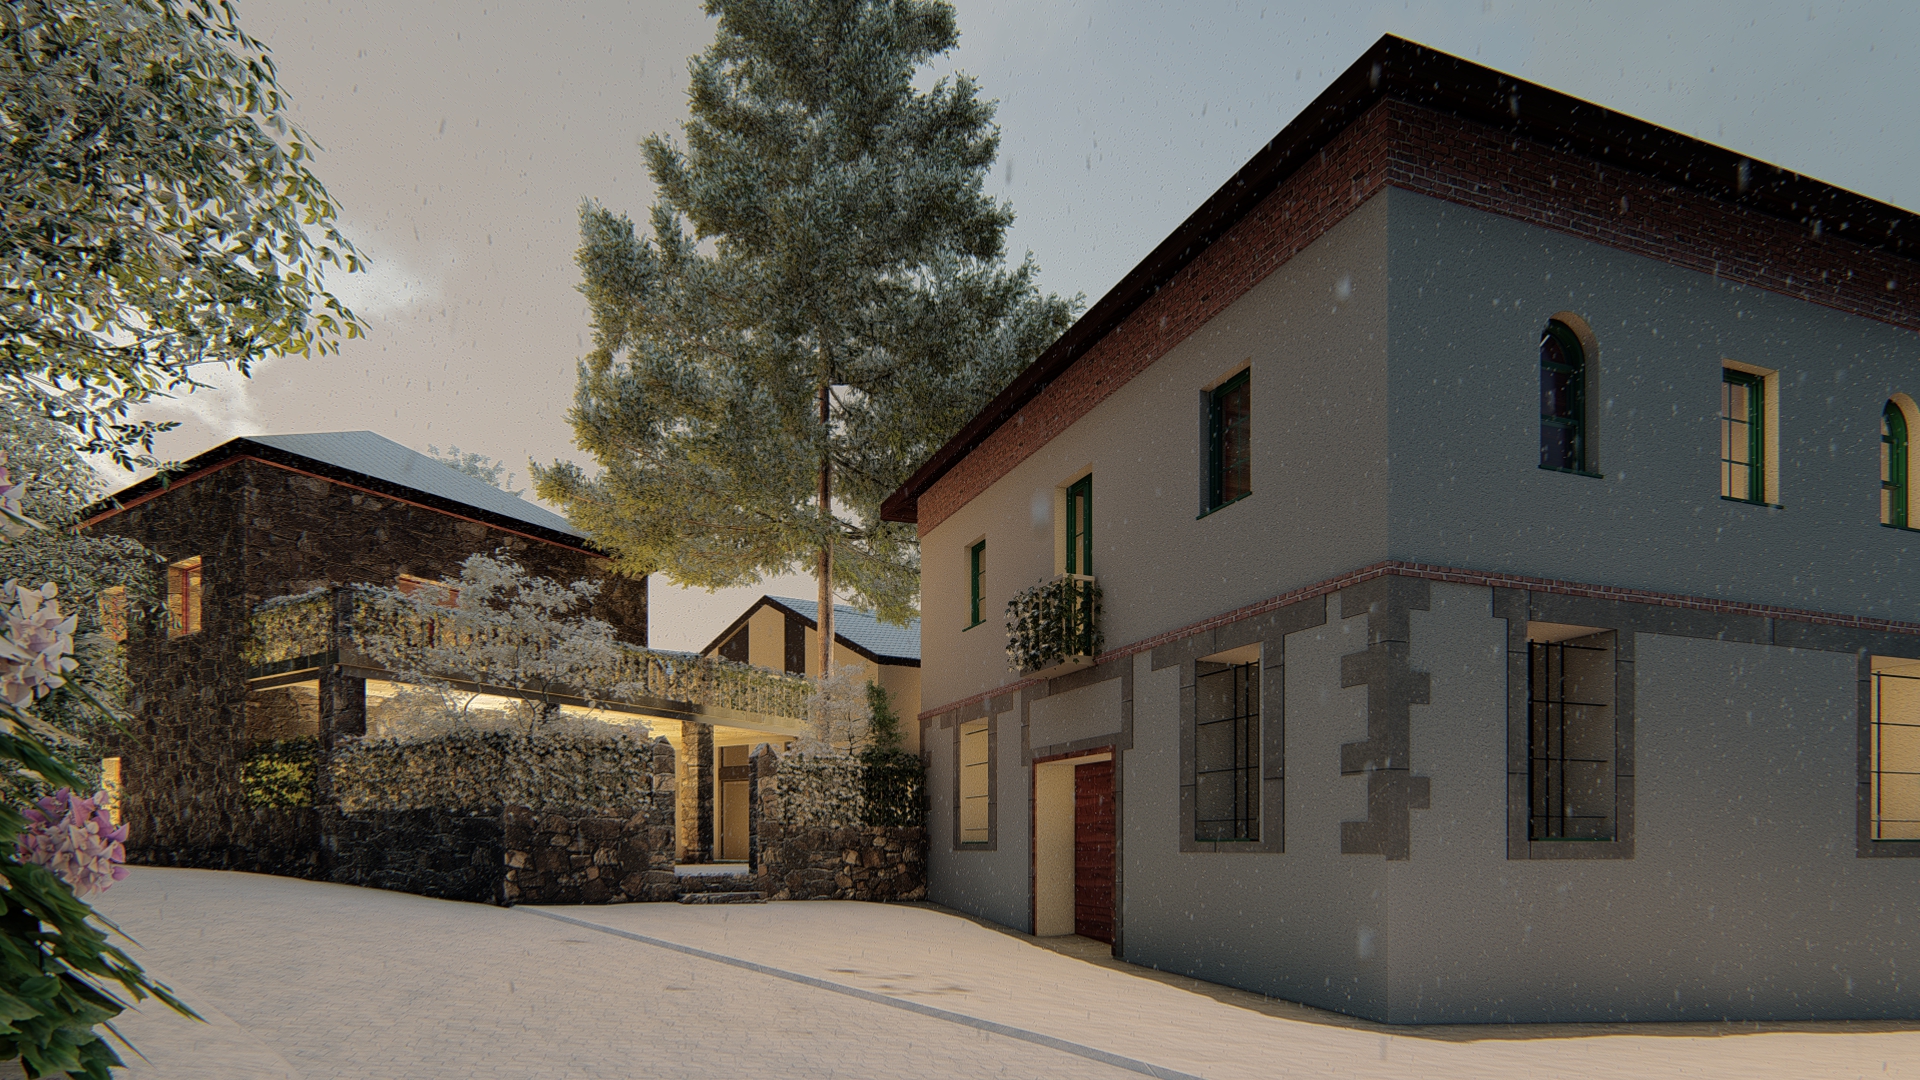 9 viviendas unifamiliares aisladas + rehabilitación de una vivienda unifamiliar. Un proyecto del estudio de arquitectura FH2L Arquitectos en Navacerrada, Madrid